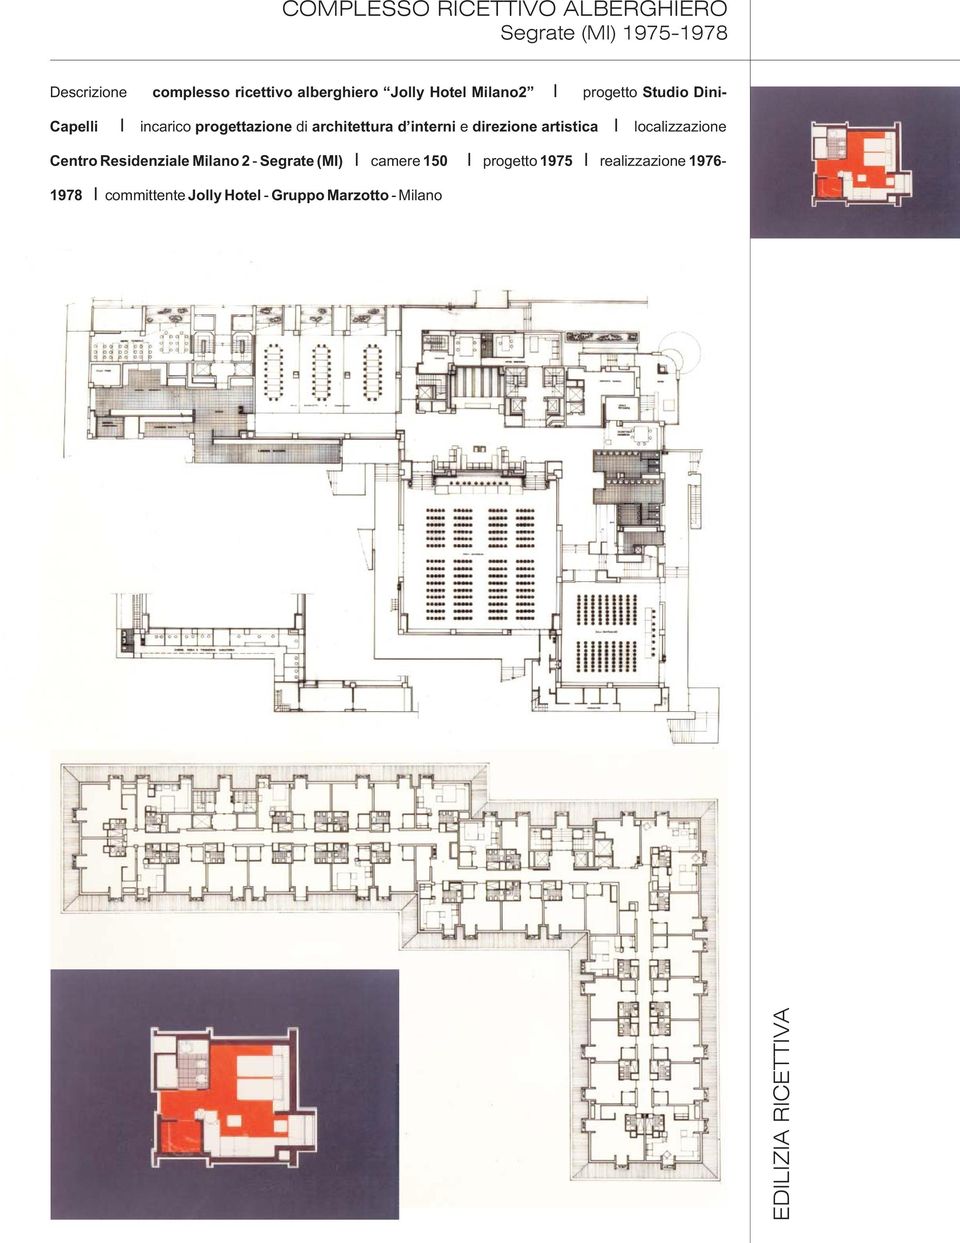 interni e direzione artistica localizzazione Centro Residenziale Milano 2 - Segrate (M) camere